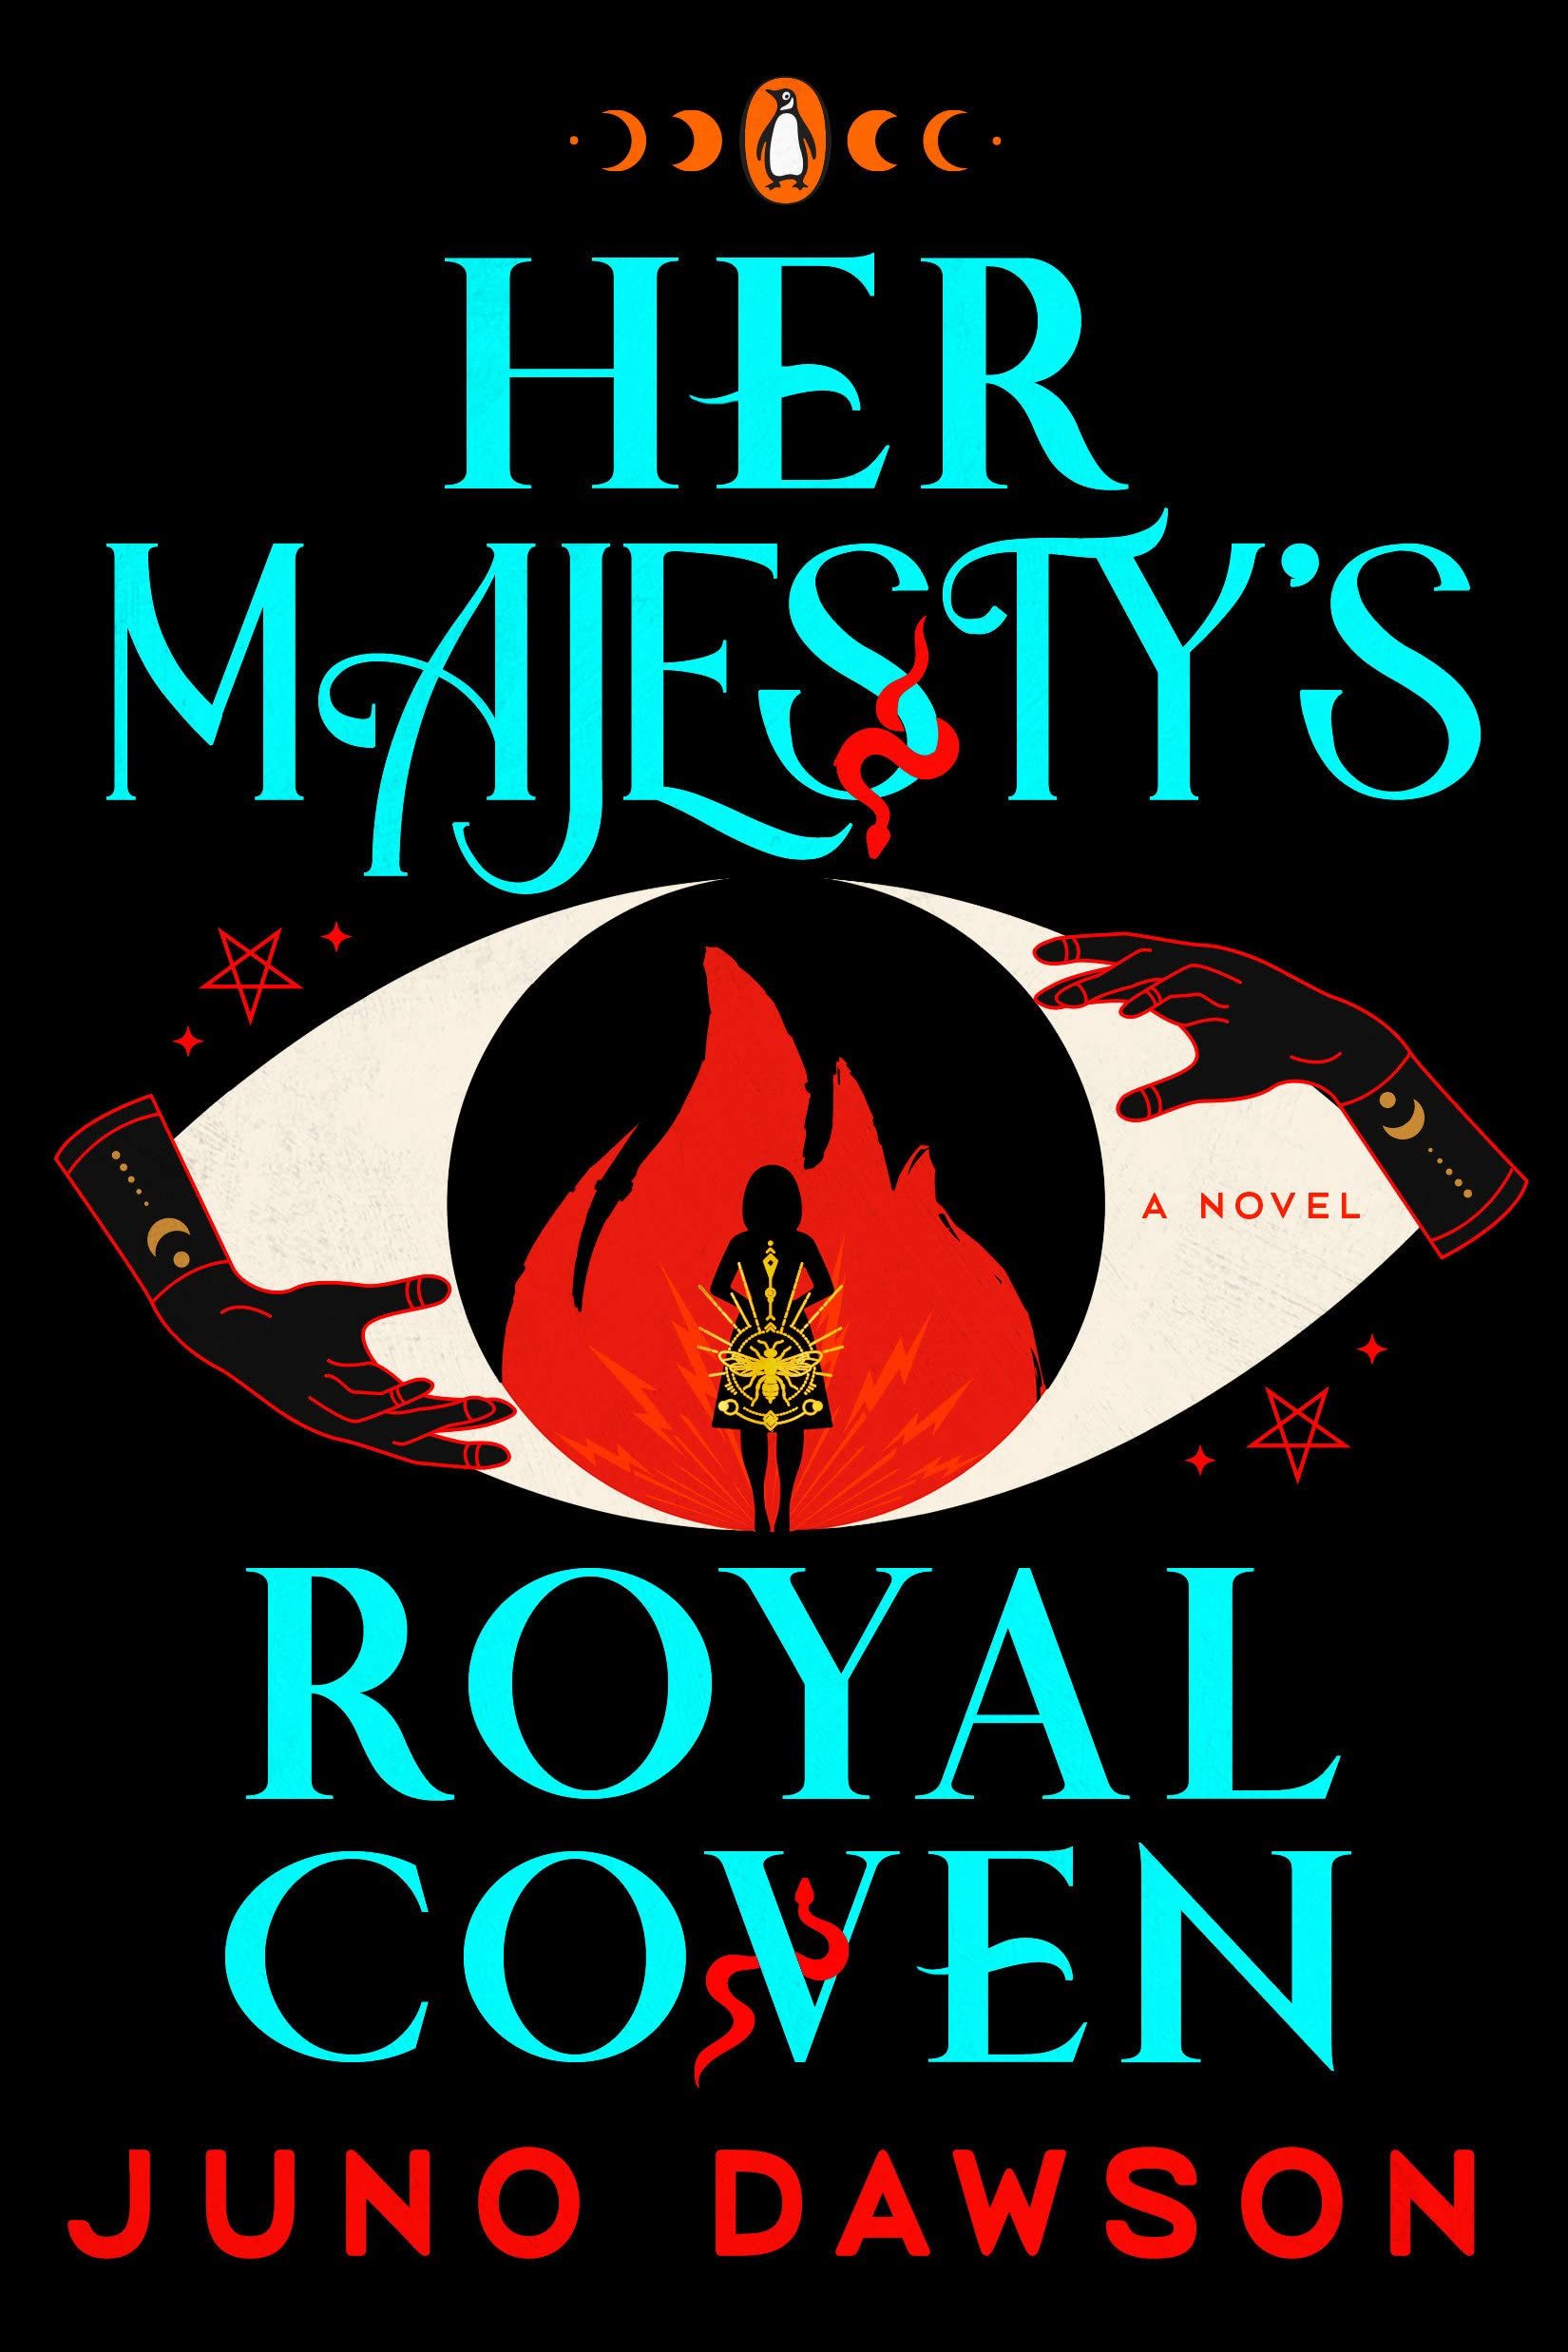 Her Majesty's Royal Coven (Her Majesty's Royal Coven #1)